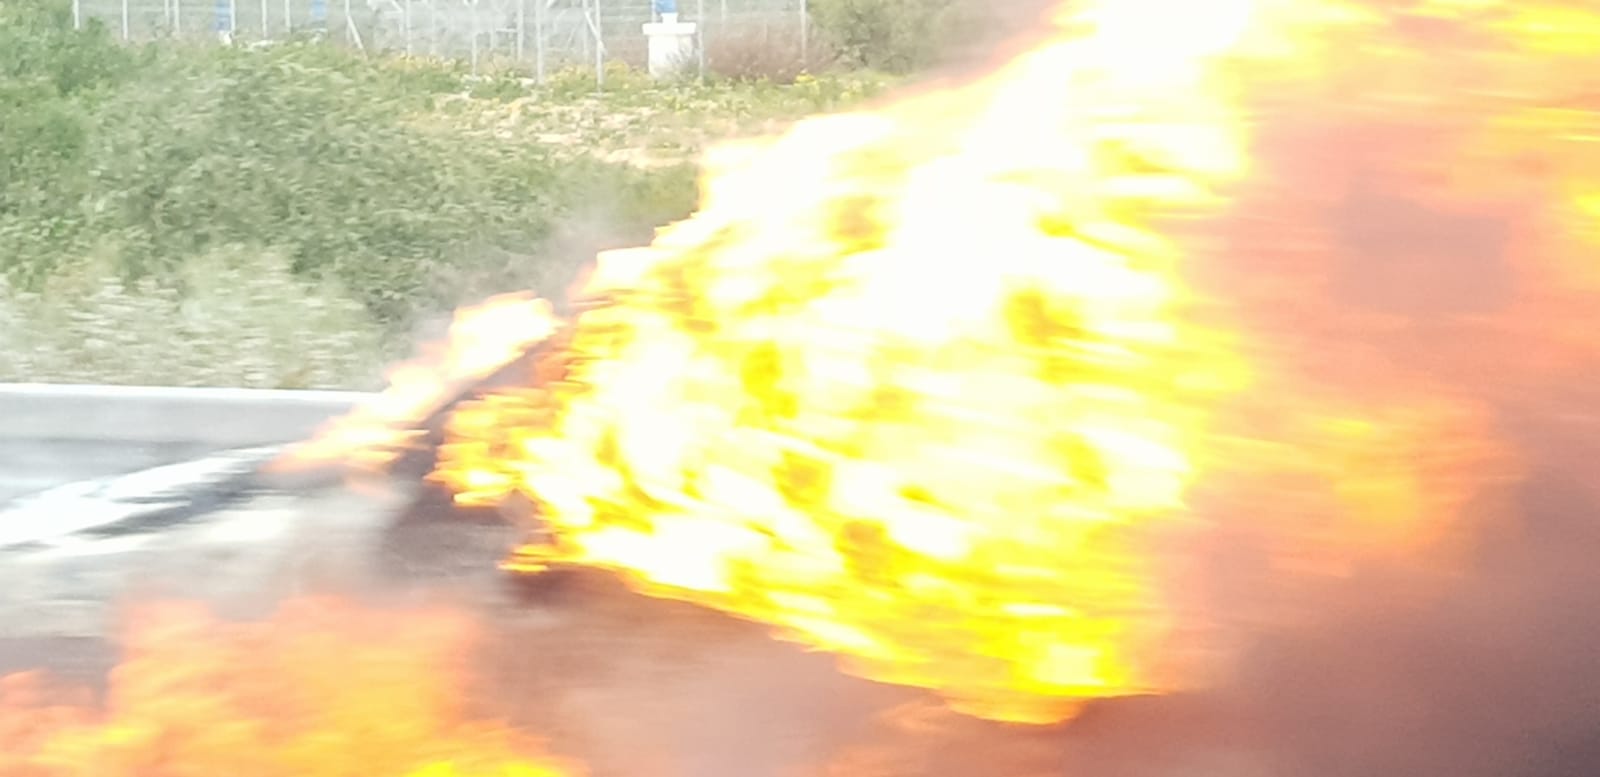 הרכב עולה בלהבות